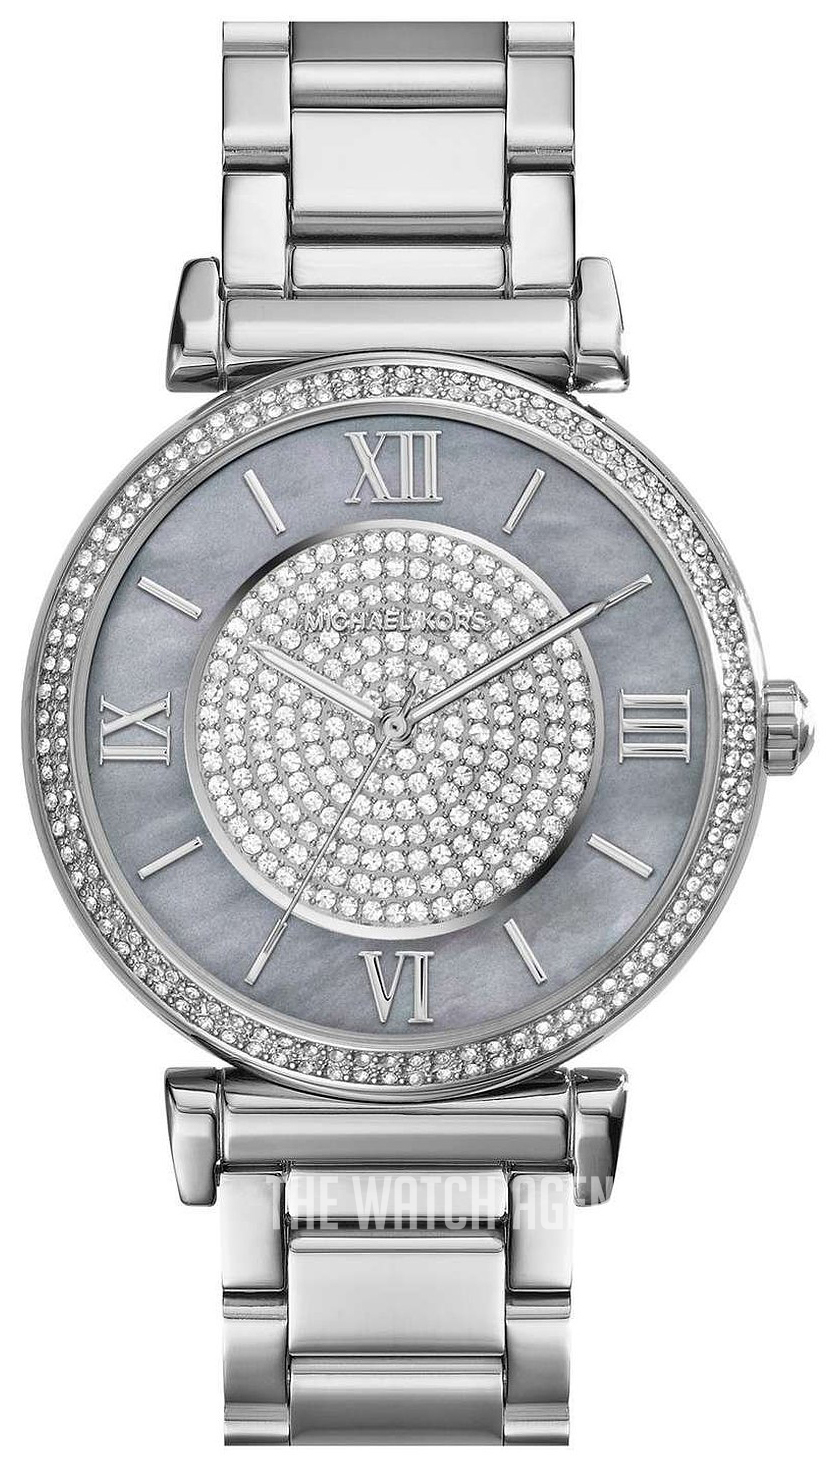 Michael Kors Catlin Black Crystal Pave Rose Gold Dial Plated Womens Watch  MK3356 xách tay chính hãng giá rẻ bảo hành dài  Đồng hồ nữ  Senmix